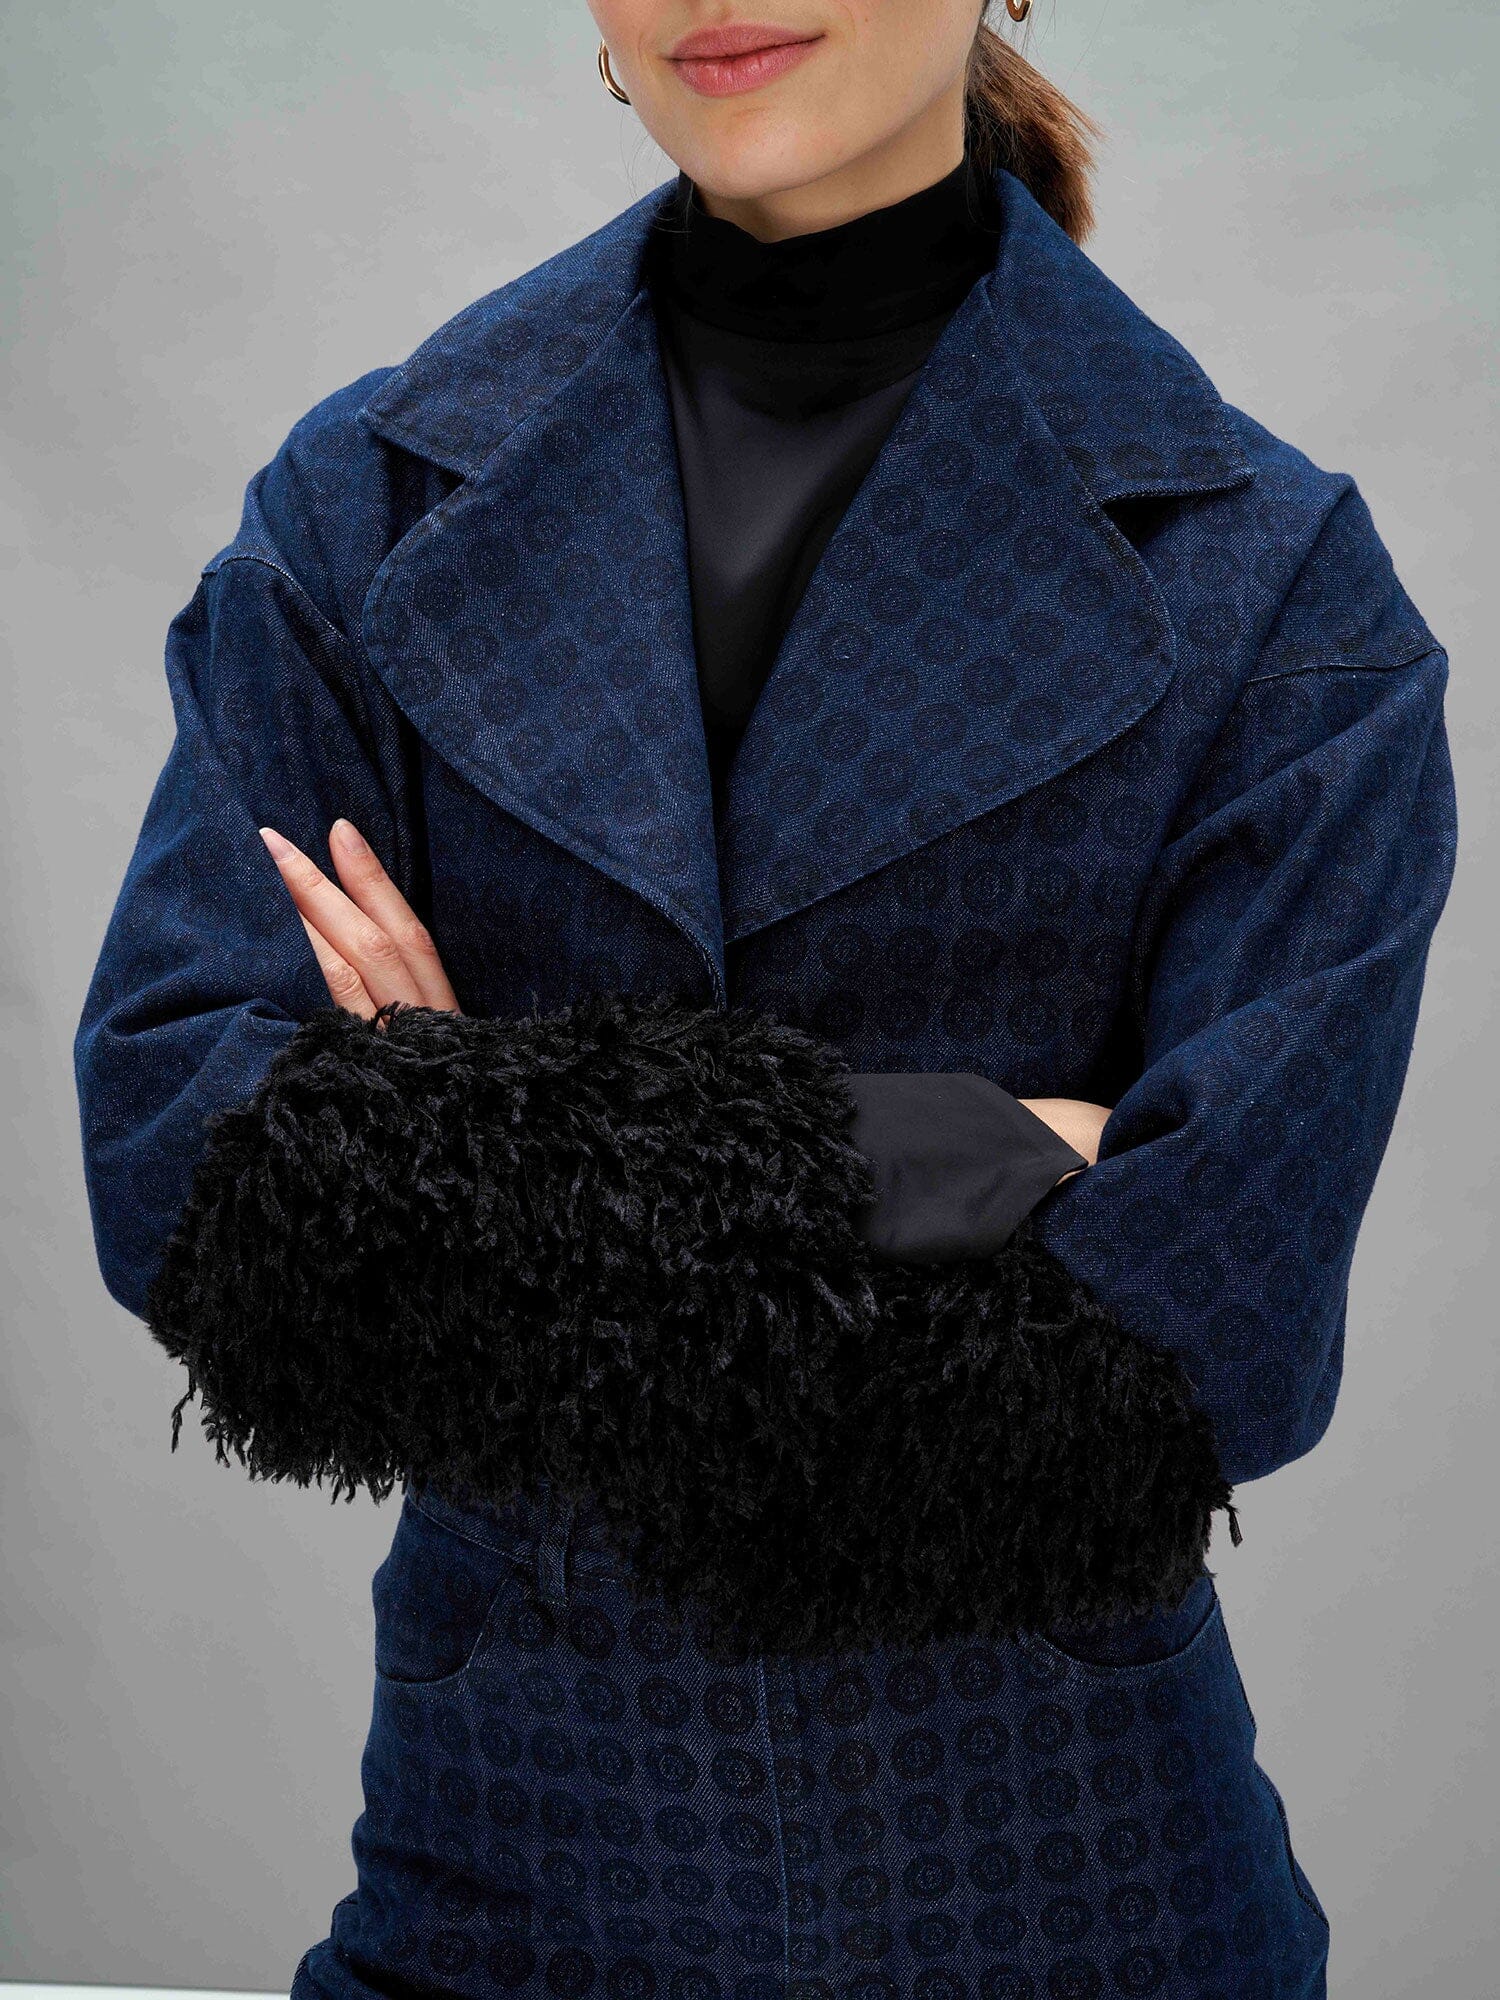 ZADIE - Blue Denim Blazon & Feather Print Short Loose Jacket with Beveled Sleeves Black Jacket Fête Impériale